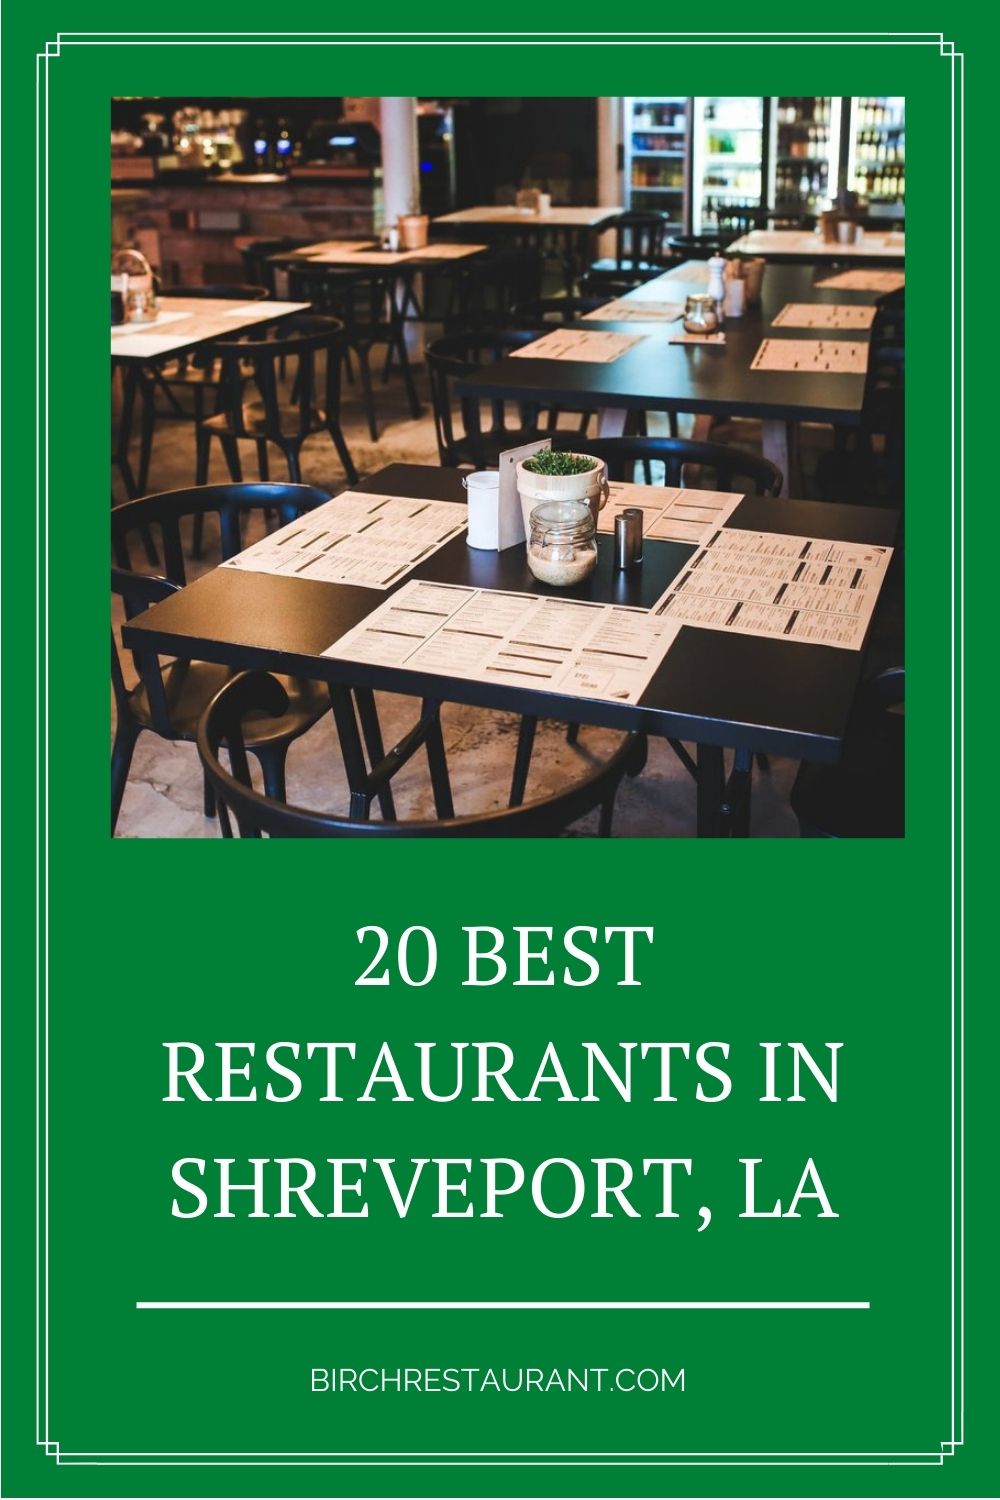 Best Restaurants in Shreveport